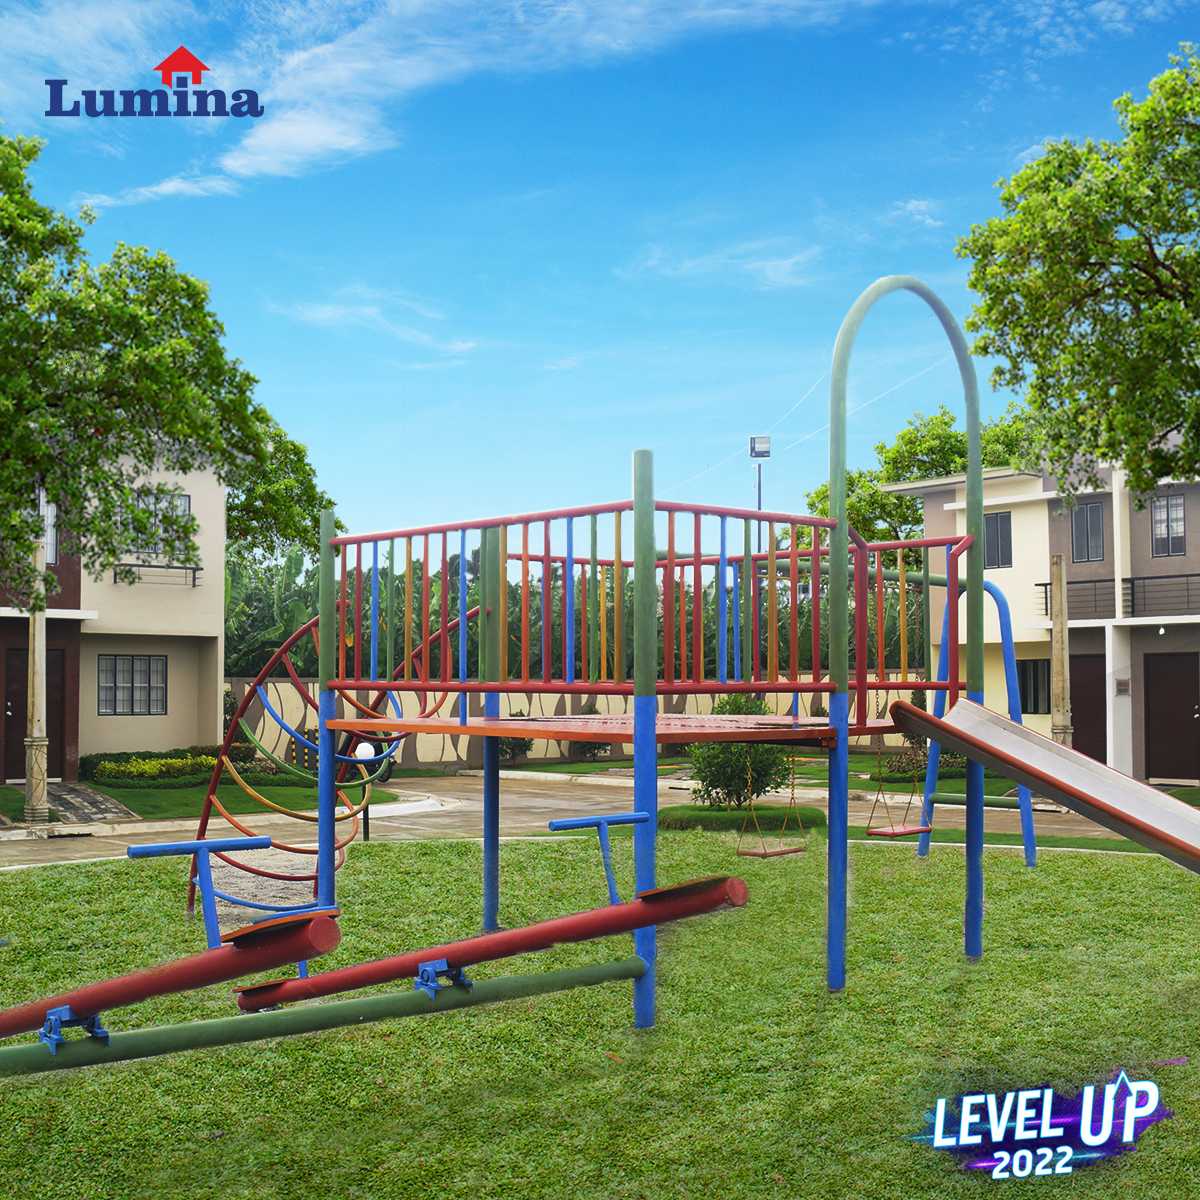 Lumina-DP-frame-February-playground-1652248912.jpg